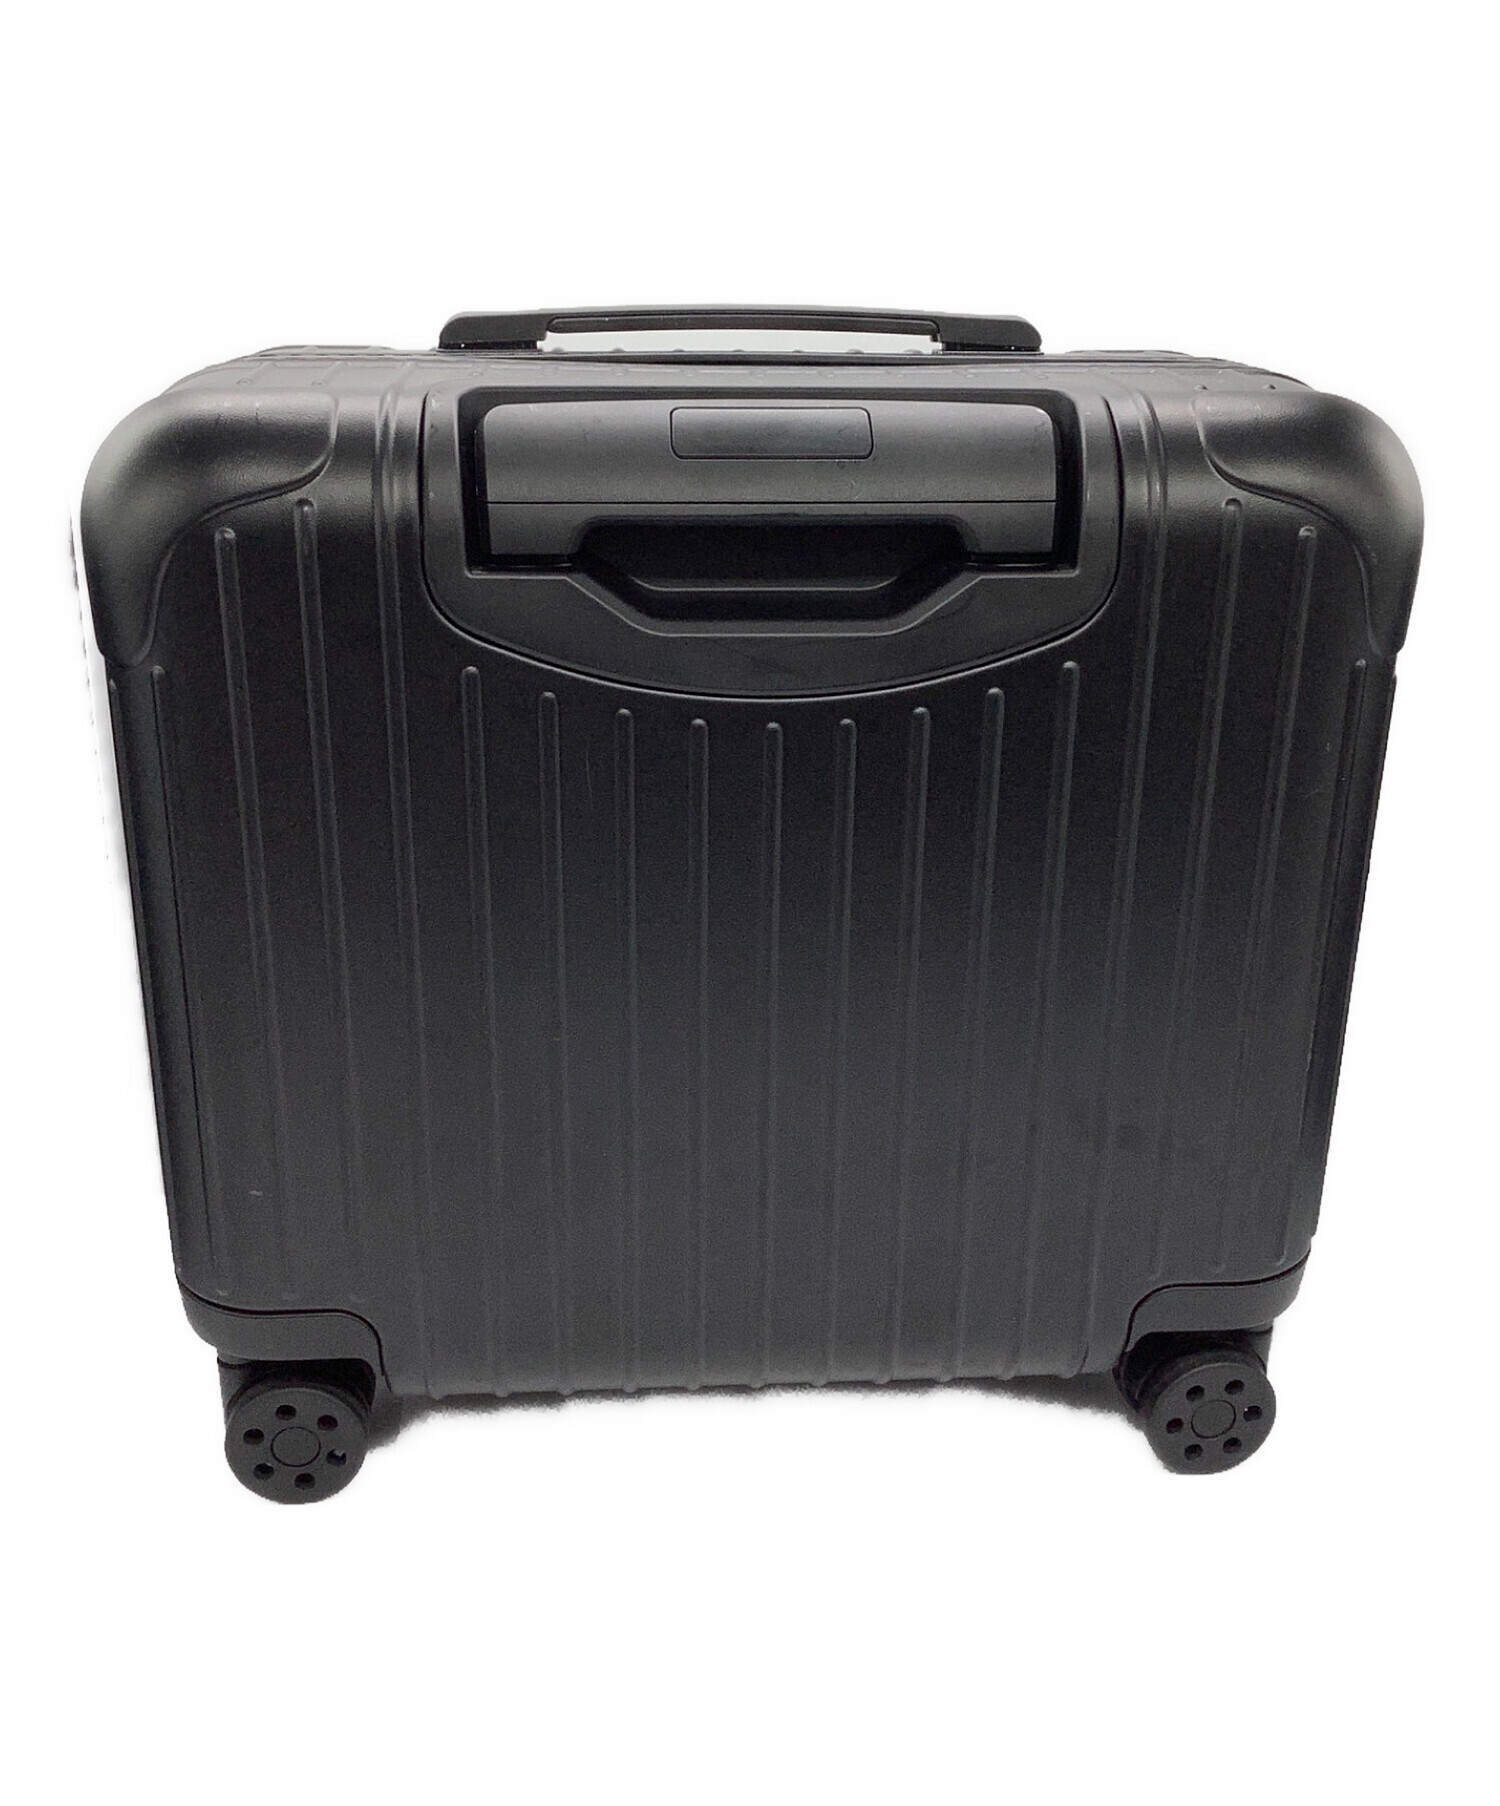 RIMOWA (リモワ) コンパクトスーツケース マットブラック